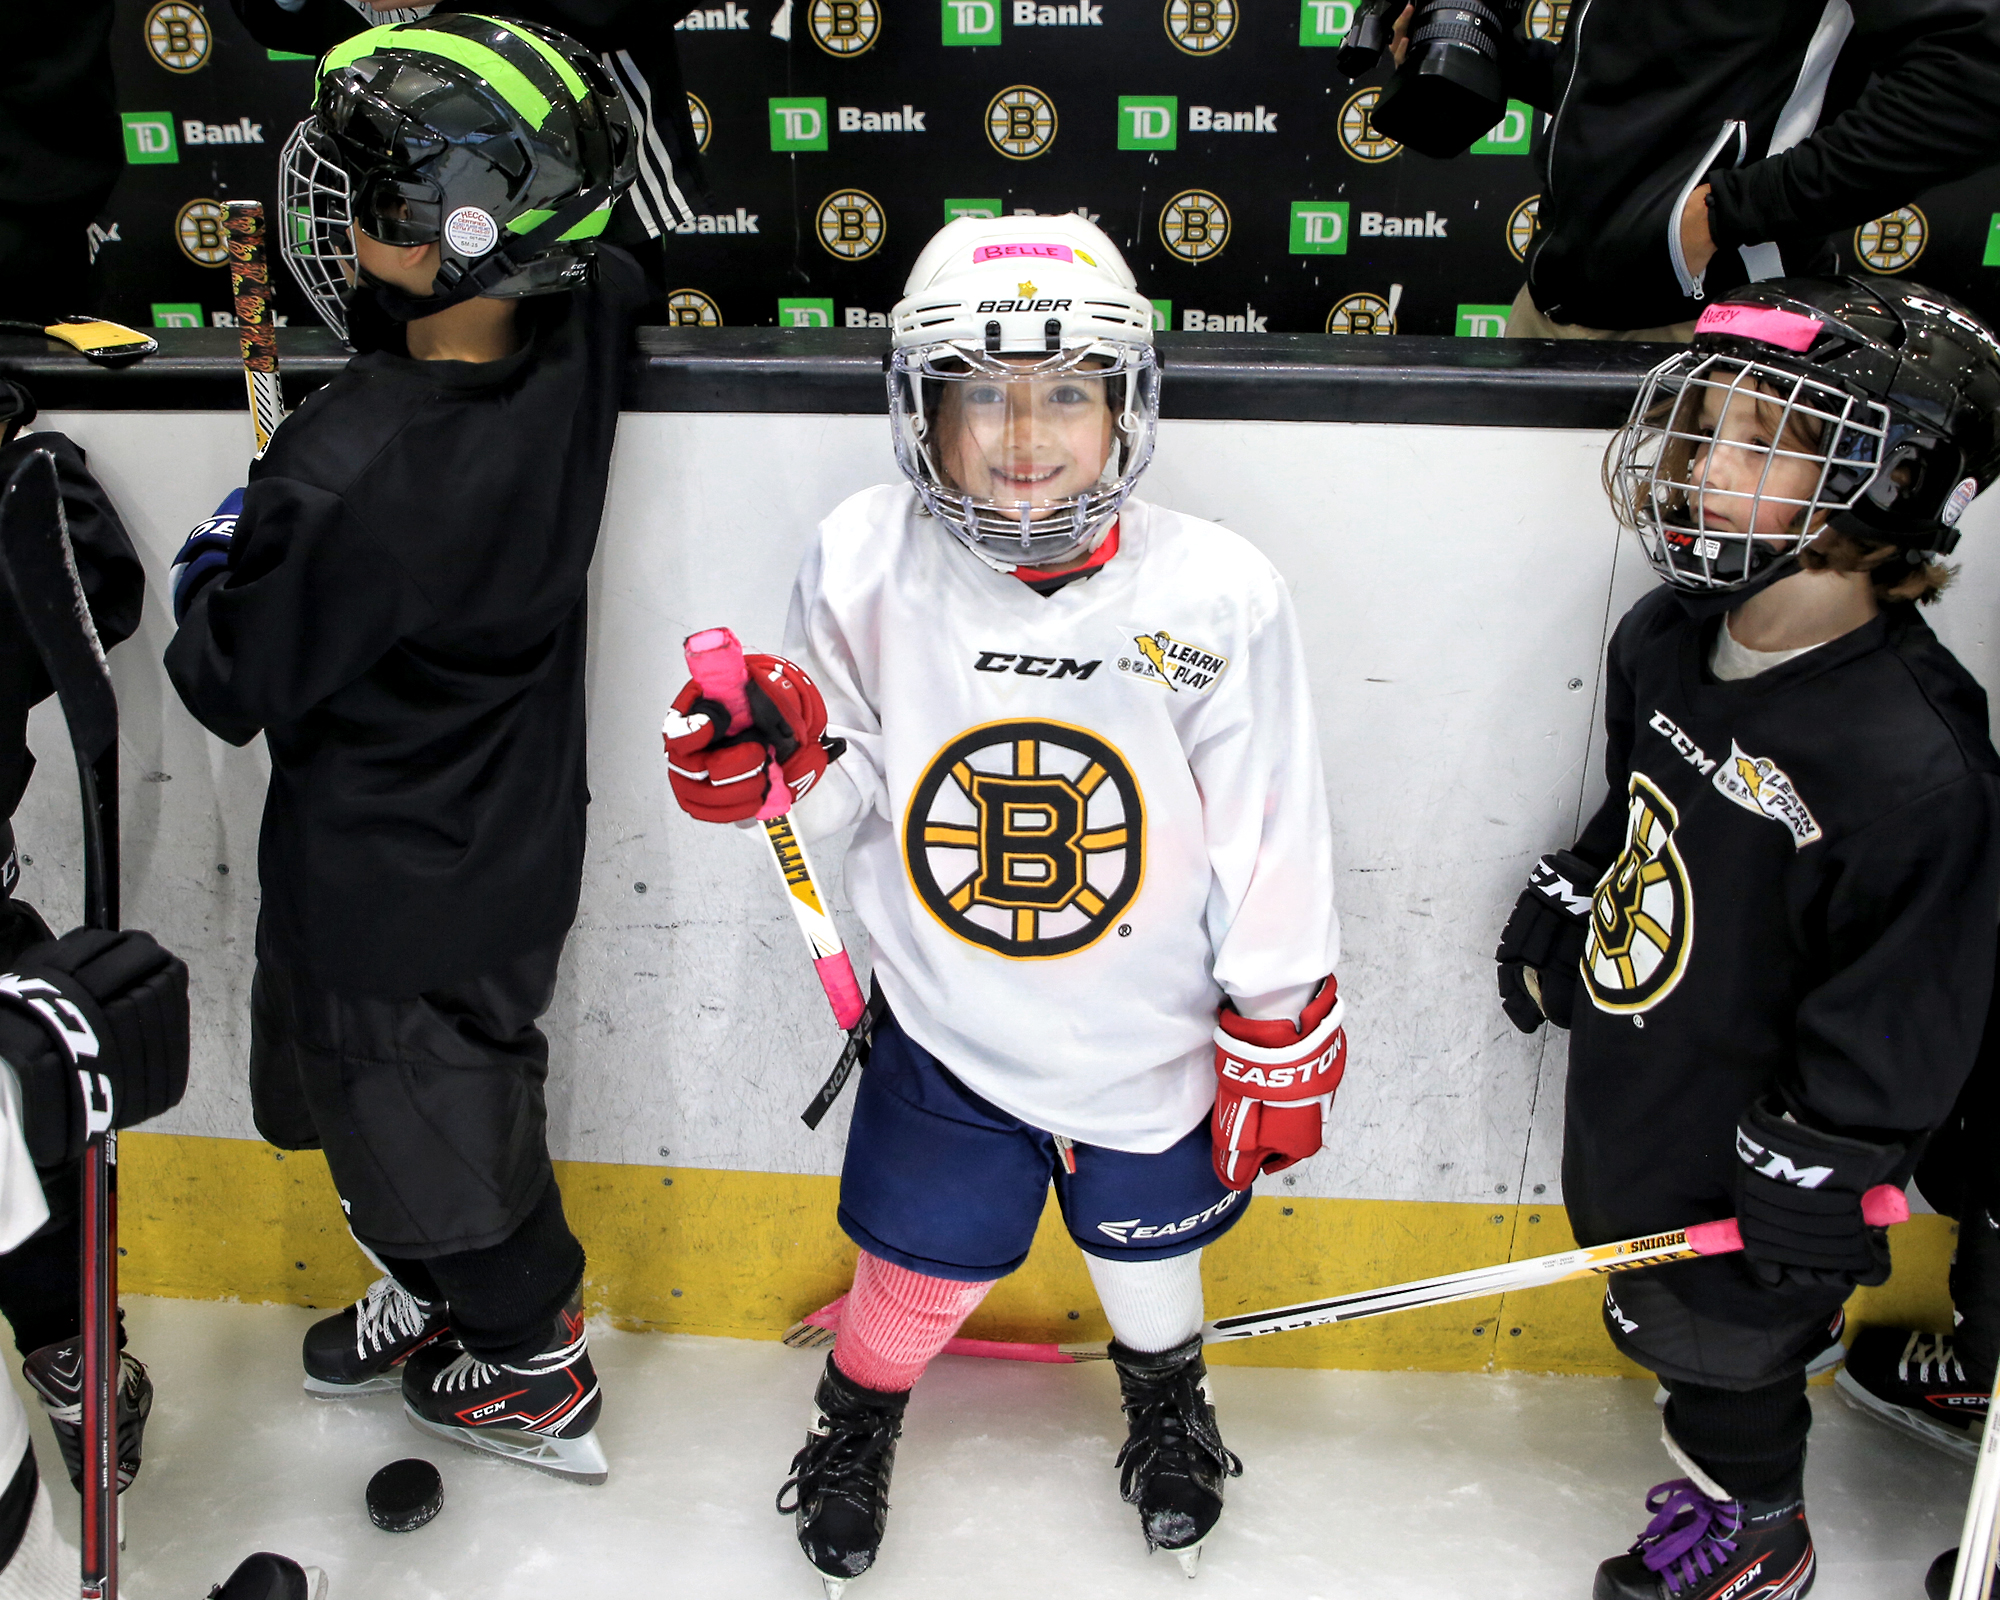 Free: Boston Bruins, National Hockey League, Ice Hockey, Sports